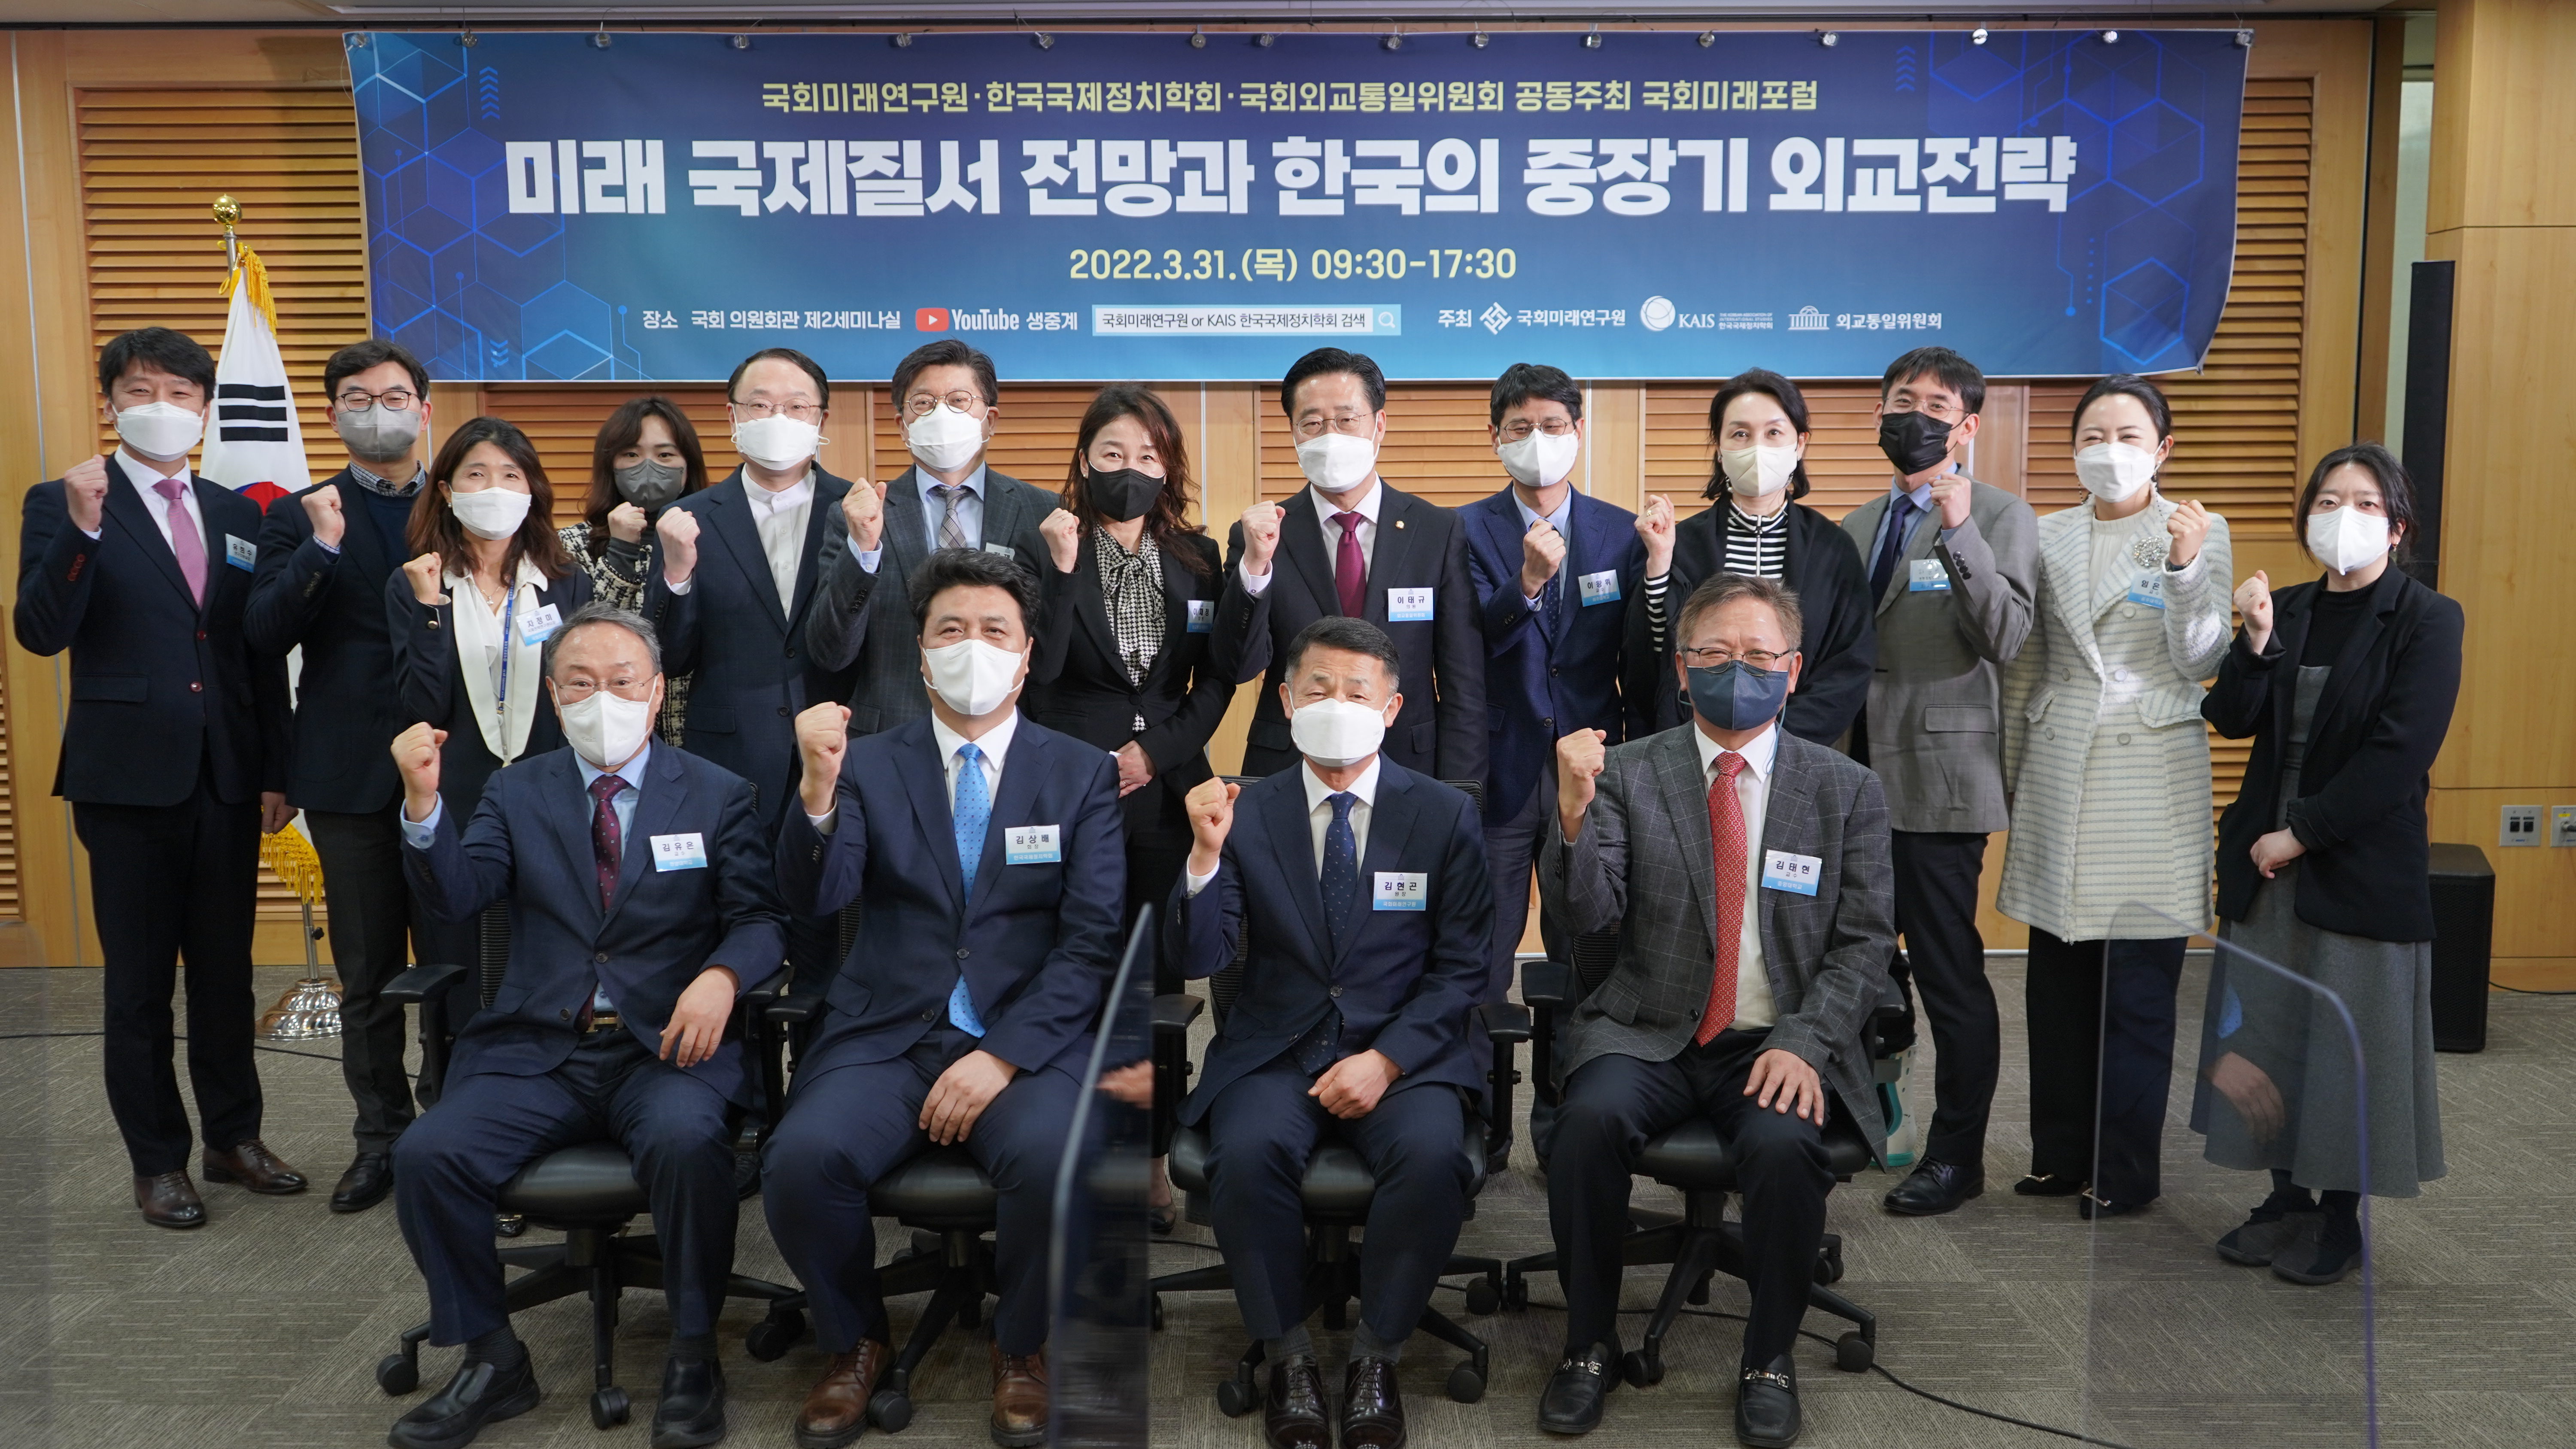 [03.31] 제4회 국회미래포럼 : 미래 국제질서 전망과 한국의 중장기 외교전략1